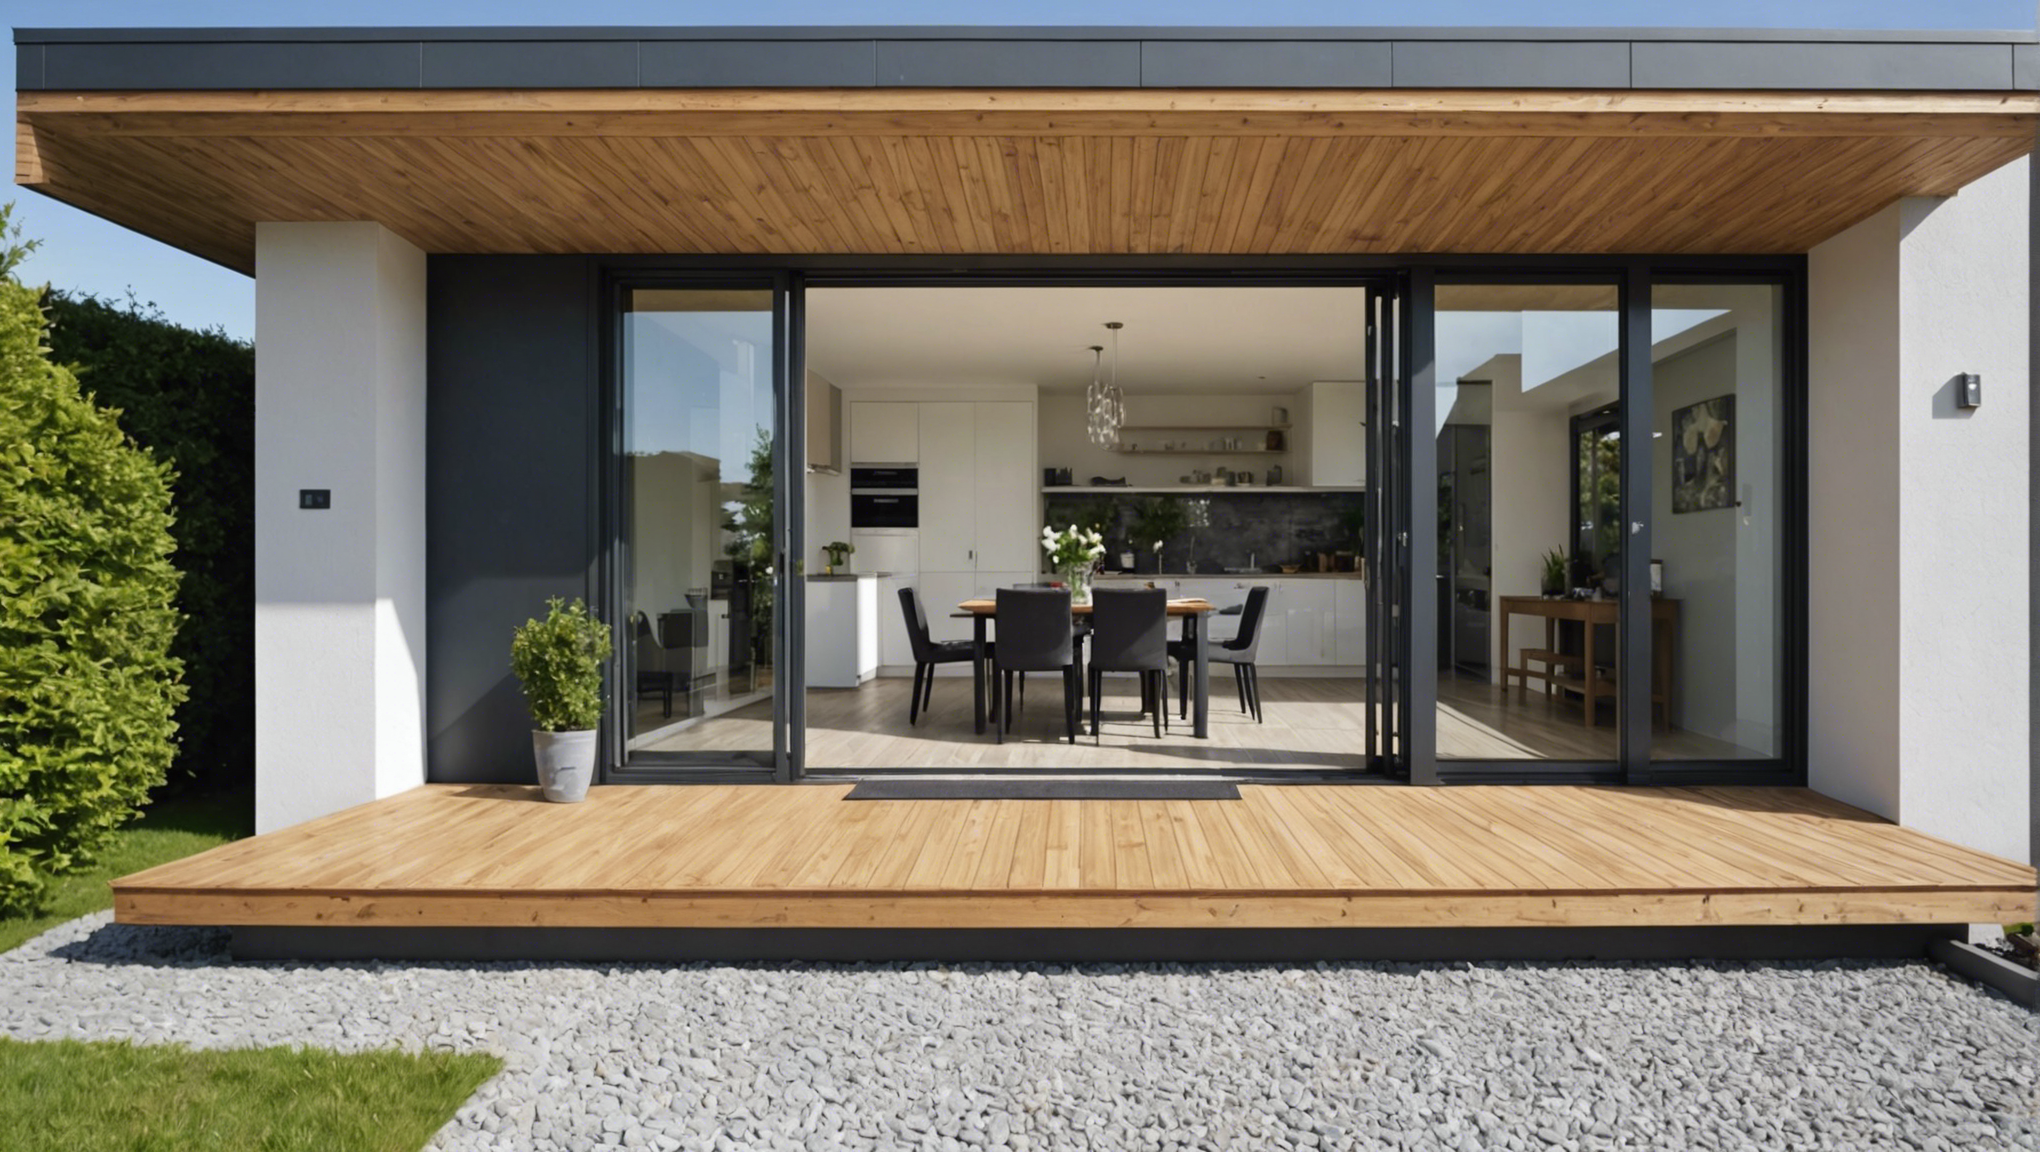 découvrez nos conseils pour choisir l'entrée parfaite pour une maison moderne avec portail : design, matériaux, dimensions, et plus encore.